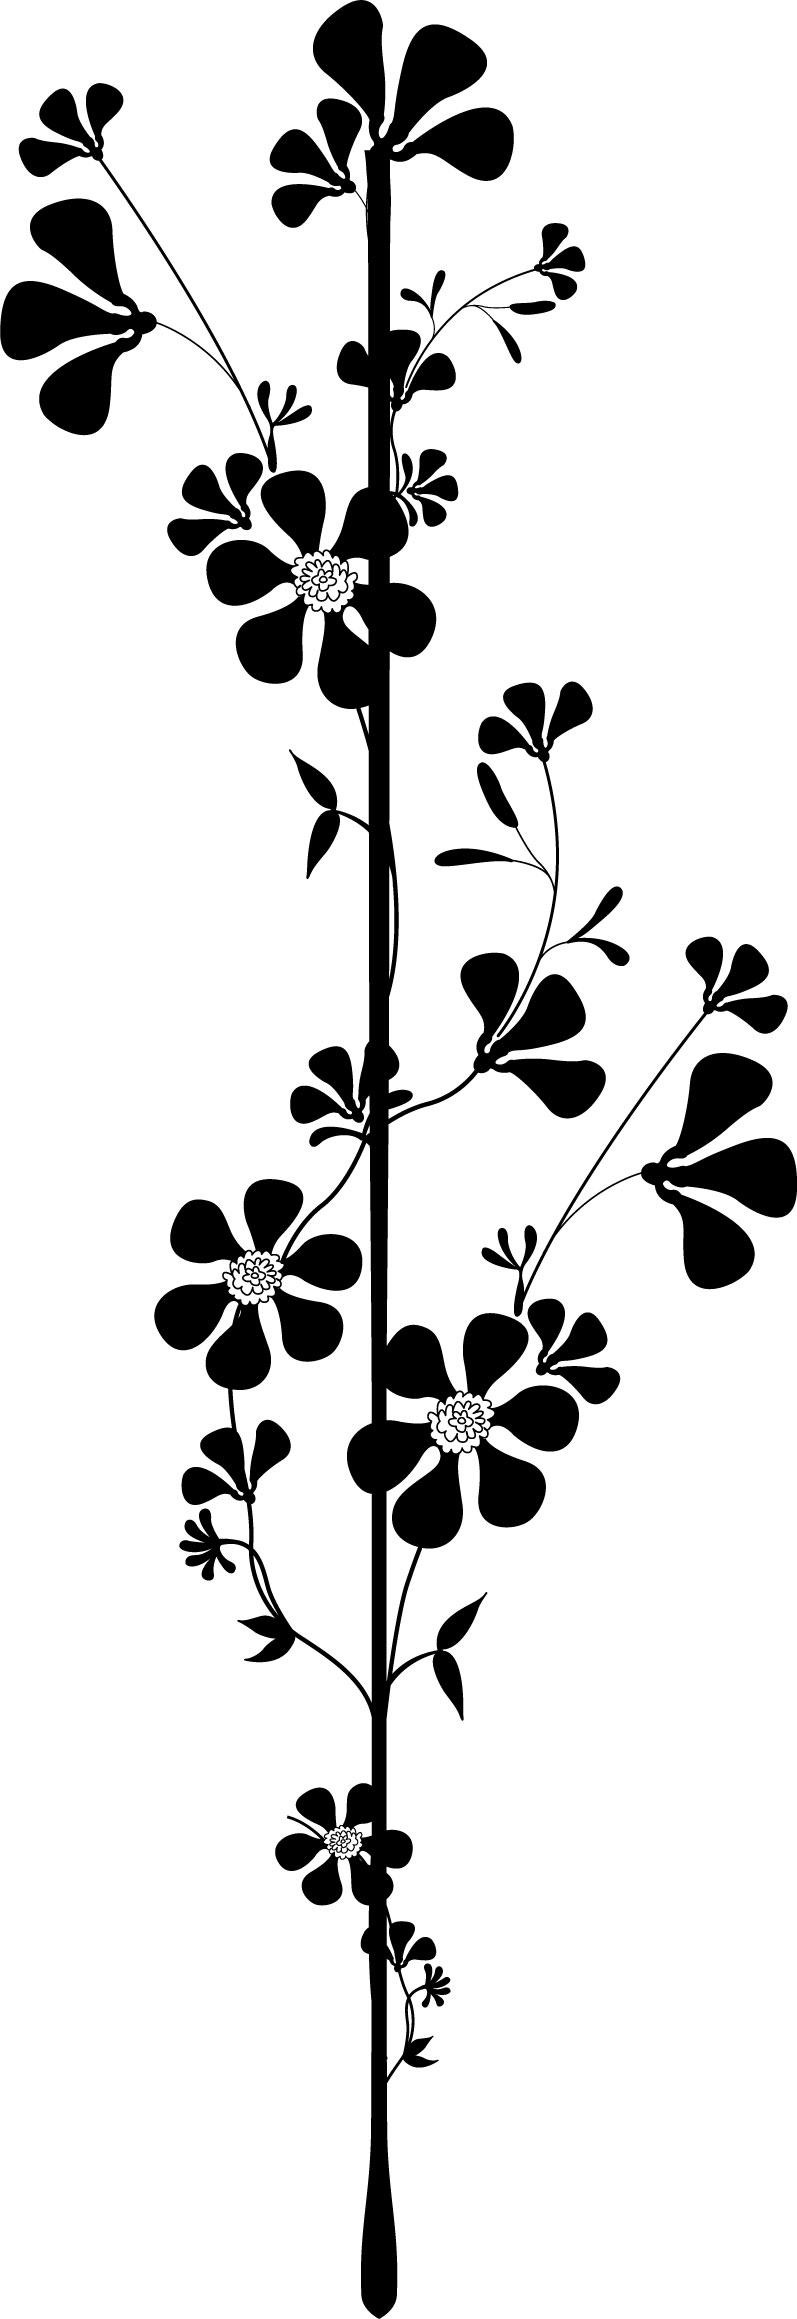 花のイラスト フリー素材 フレーム枠no 290 白黒 葉 縦線